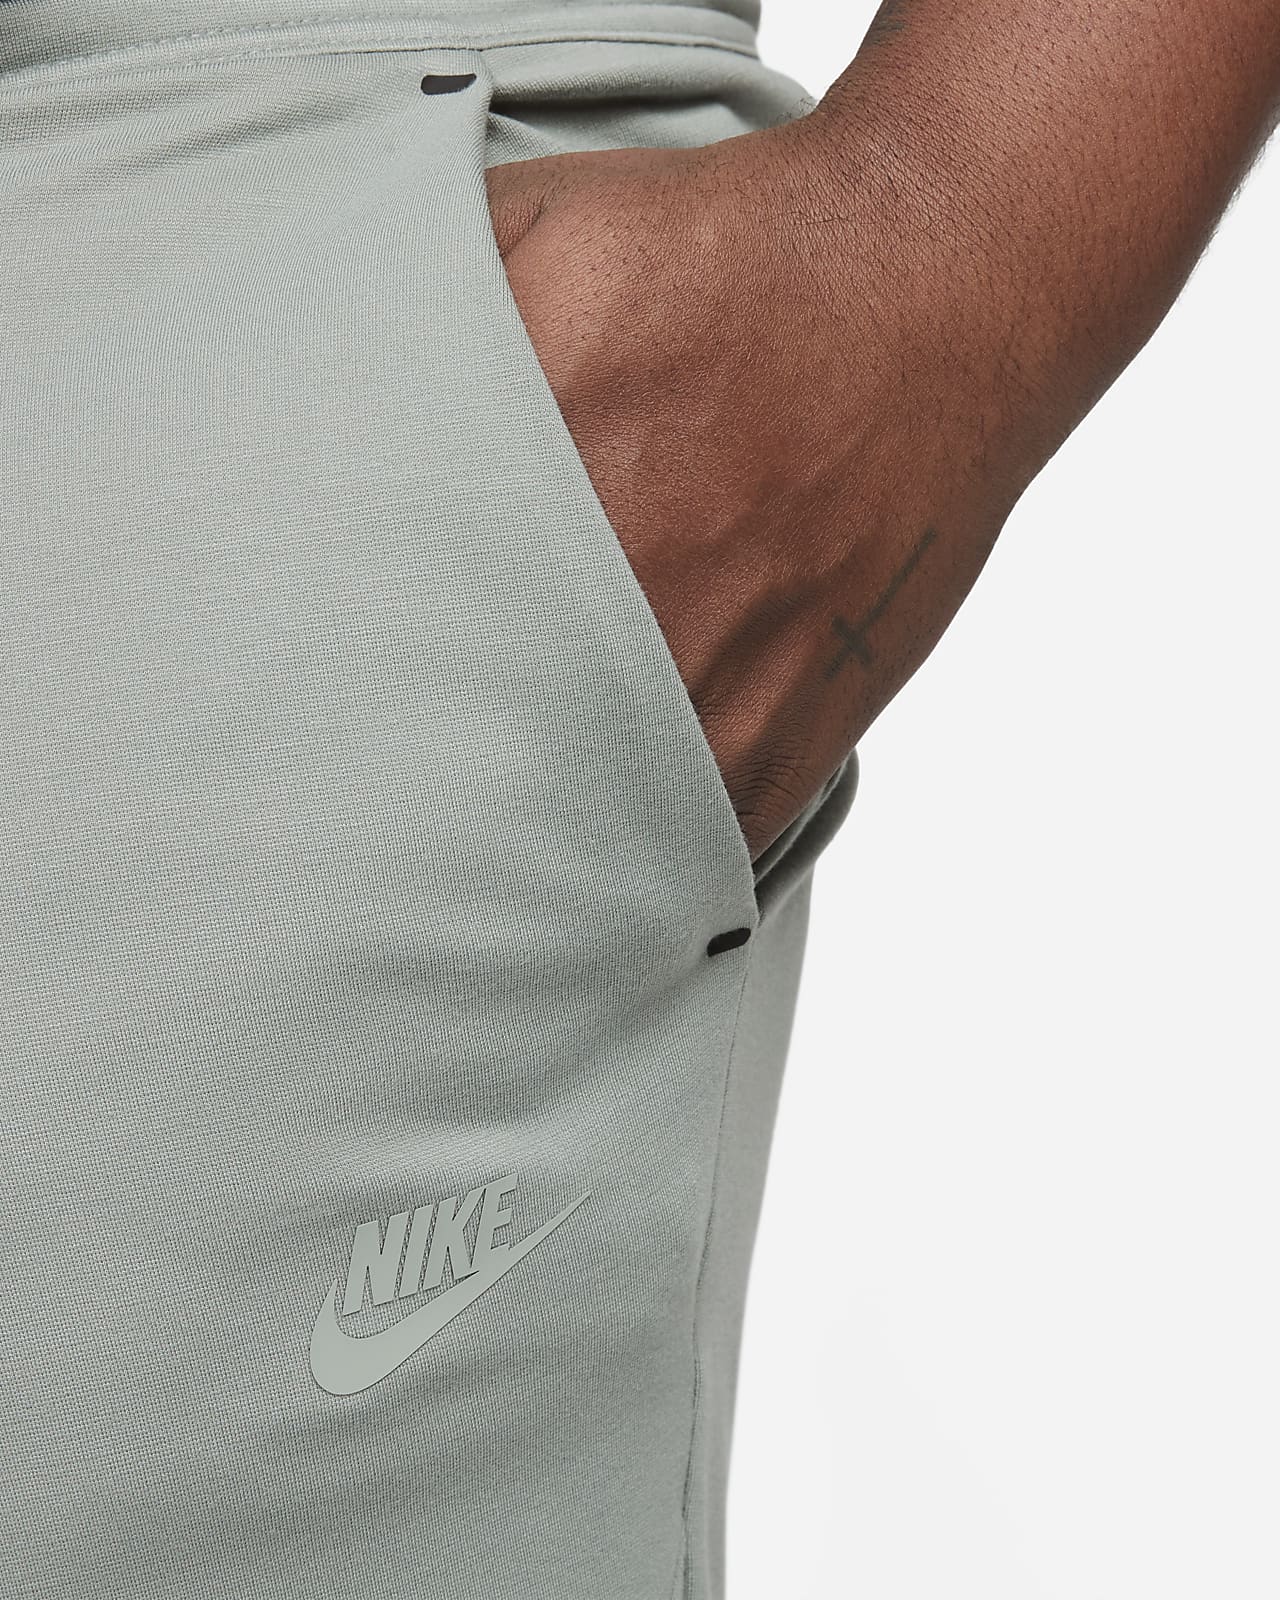 Nike Sportswear Slim Fit Tech Fleece Jogger Pants